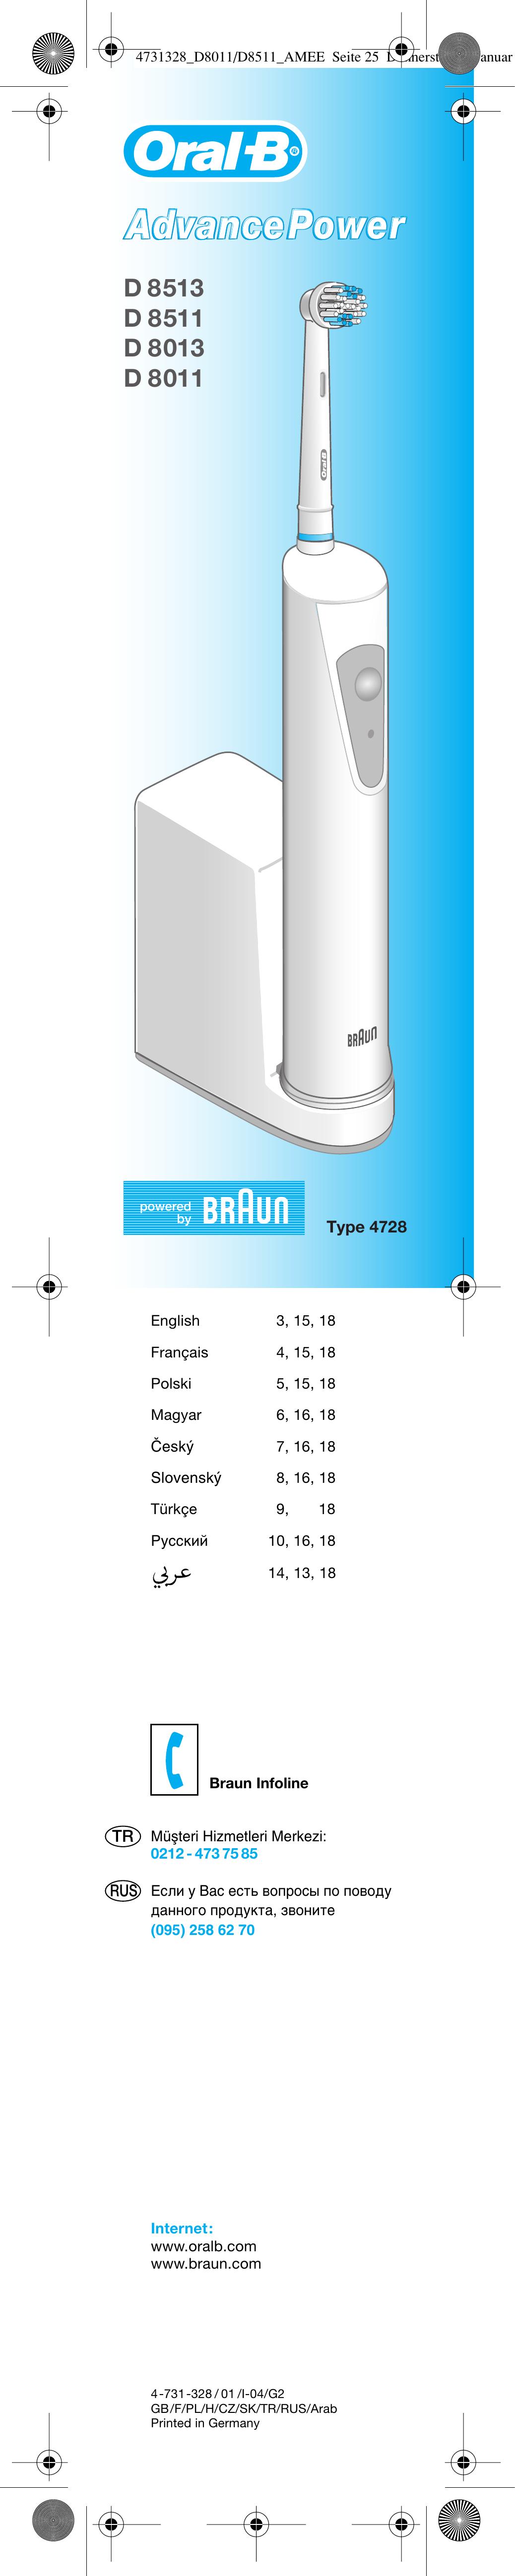 Braun D 8513 Electric Toothbrush User Manual